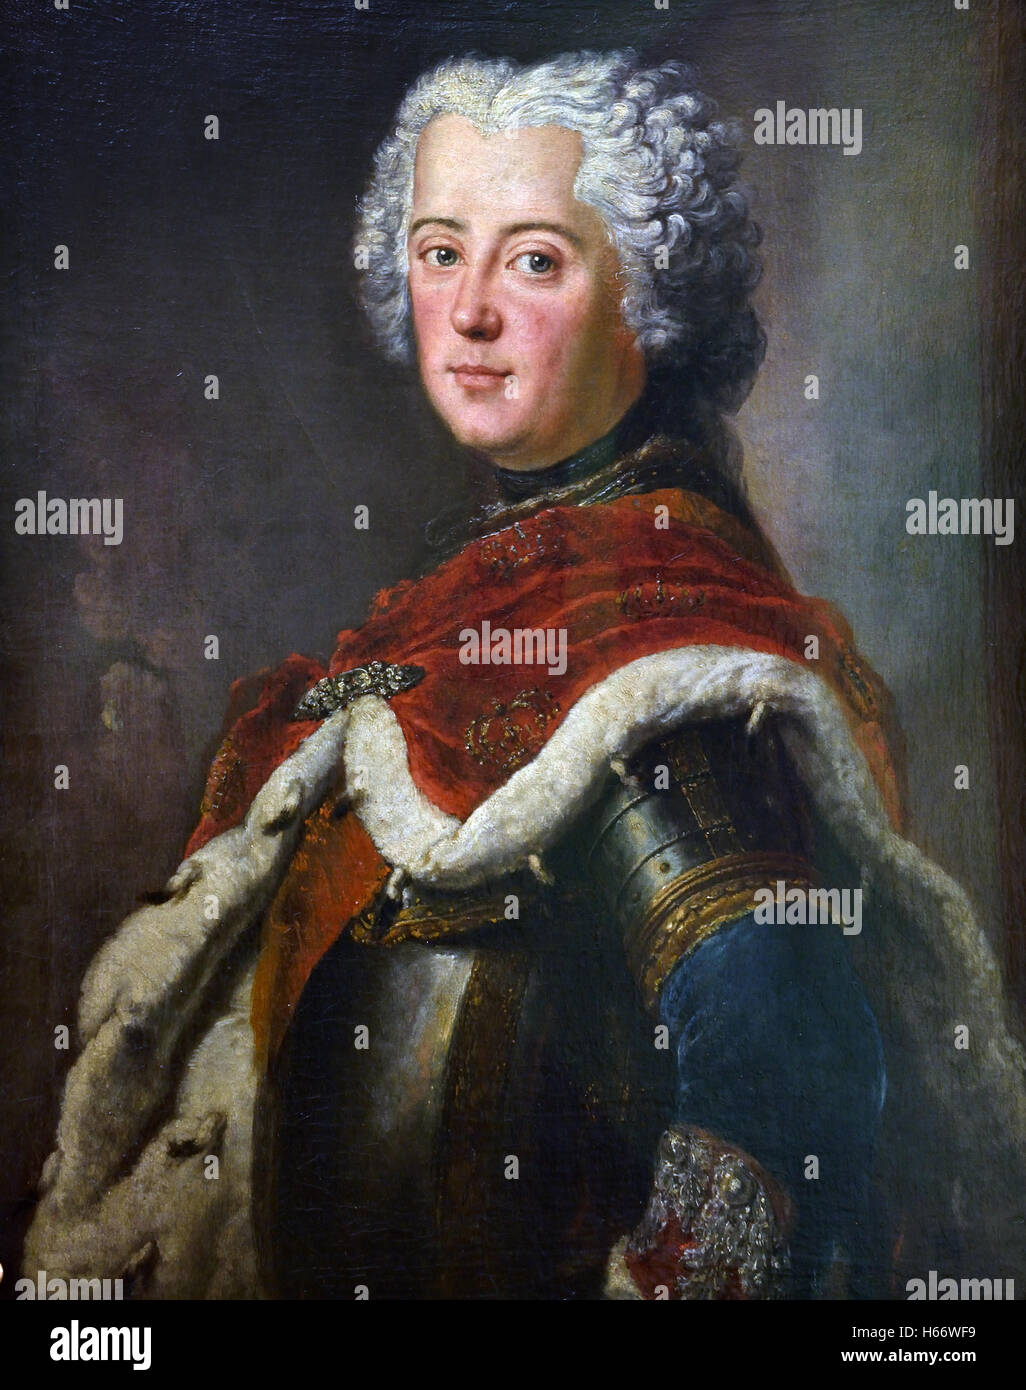 Friedrich der große (1712-1786) als Prinz - Krone war Frederick II König von Preußen von 1740 bis 1786, die längste Regierungszeit von jeder Hohenzollern König Maler Antoine Pesne 1683-1757 Deutsch Deutschland Stockfoto